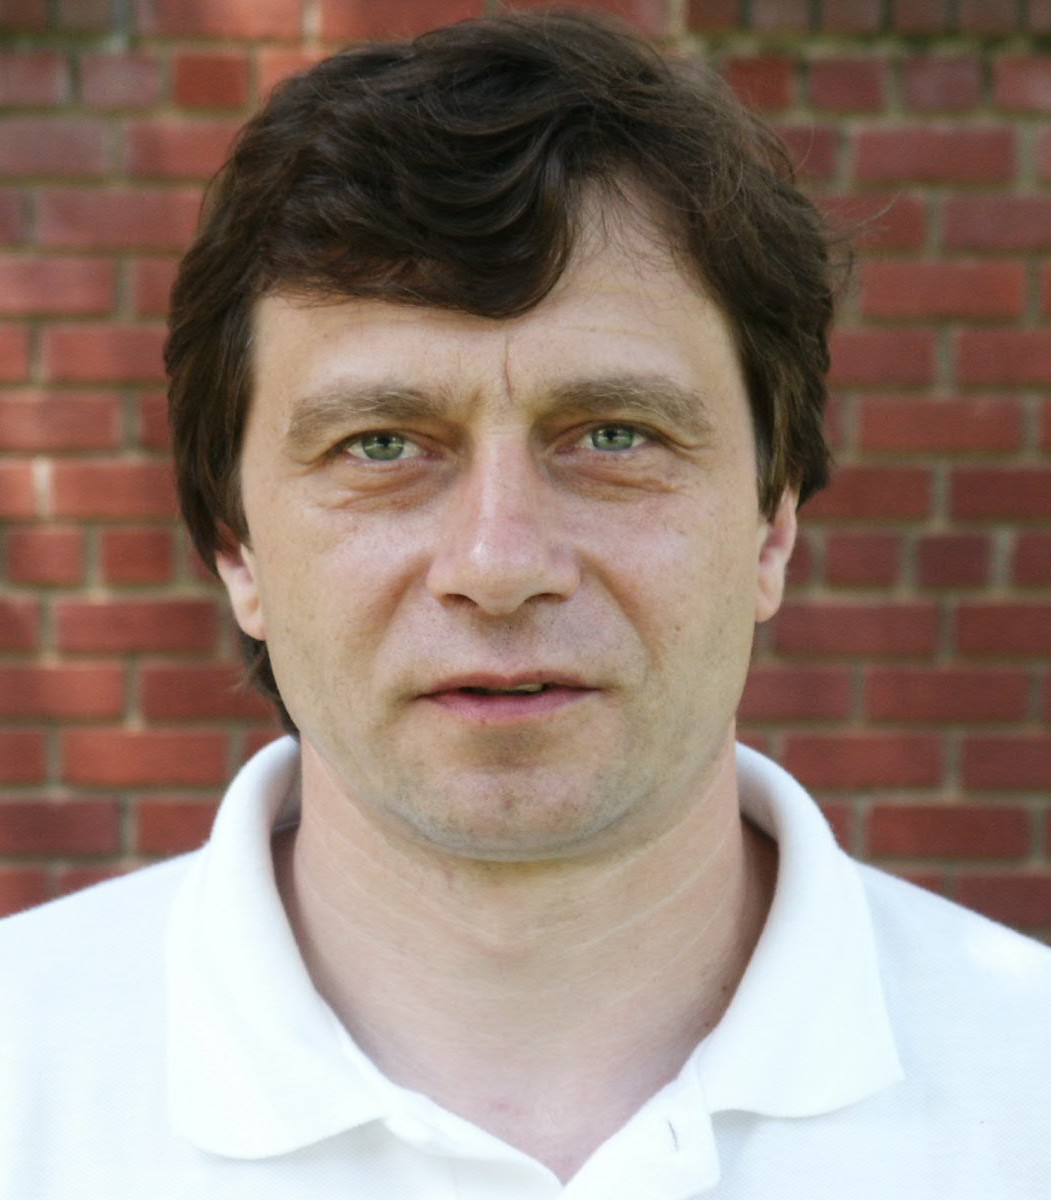 Yuriy Razskazovskiy of Yuriy Razskazovskiy